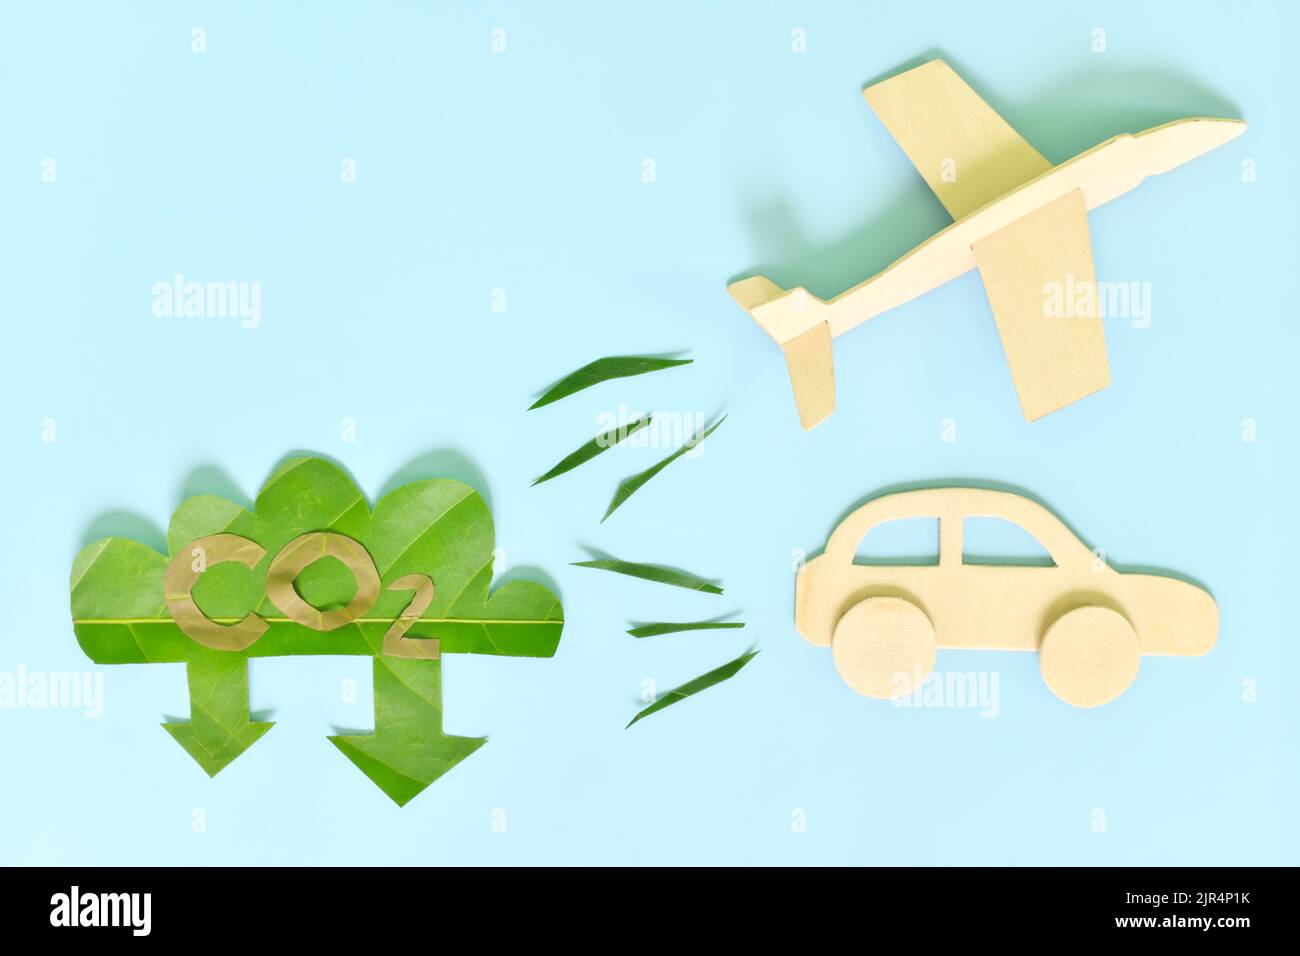 Trasporto aereo e terrestre o settore dei trasporti concetto di riduzione delle emissioni di carbonio. Aeroplano e auto che rilasciano basso CO2 icona verde foglia ritaglio. Foto Stock